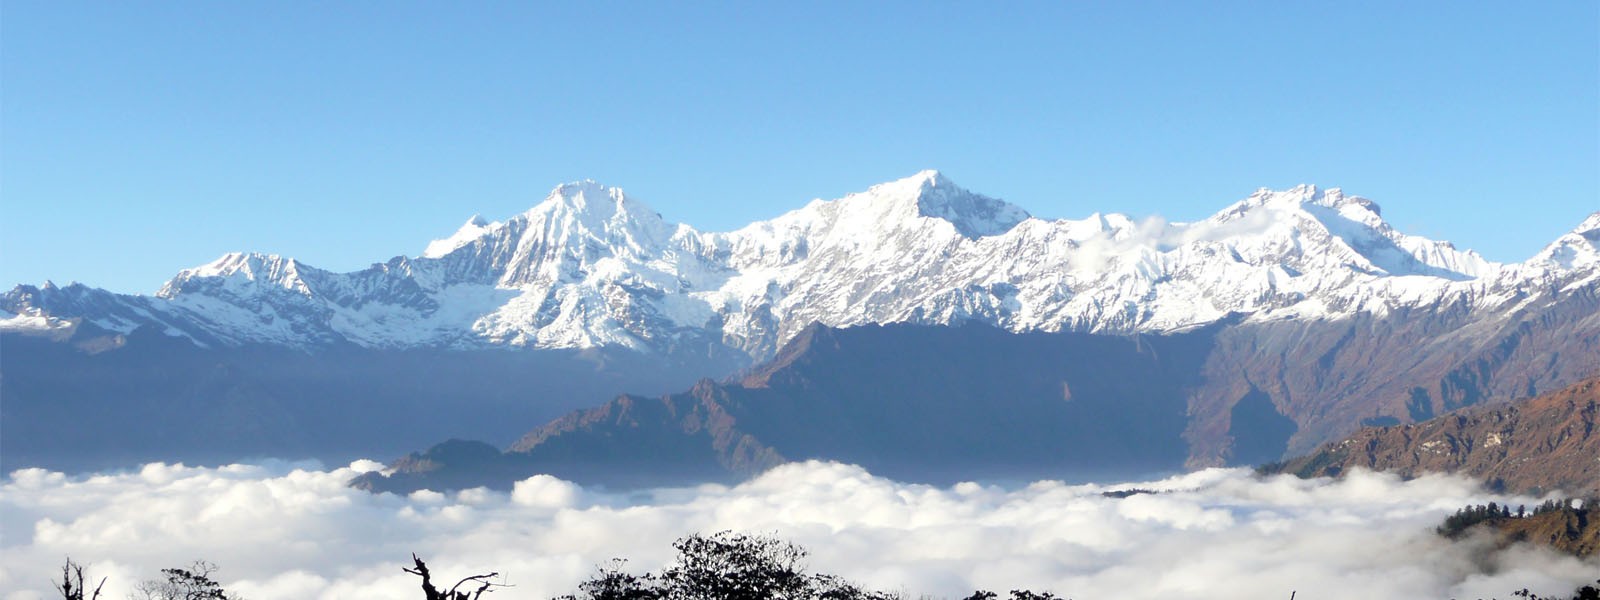 Ganesh Himal Region 